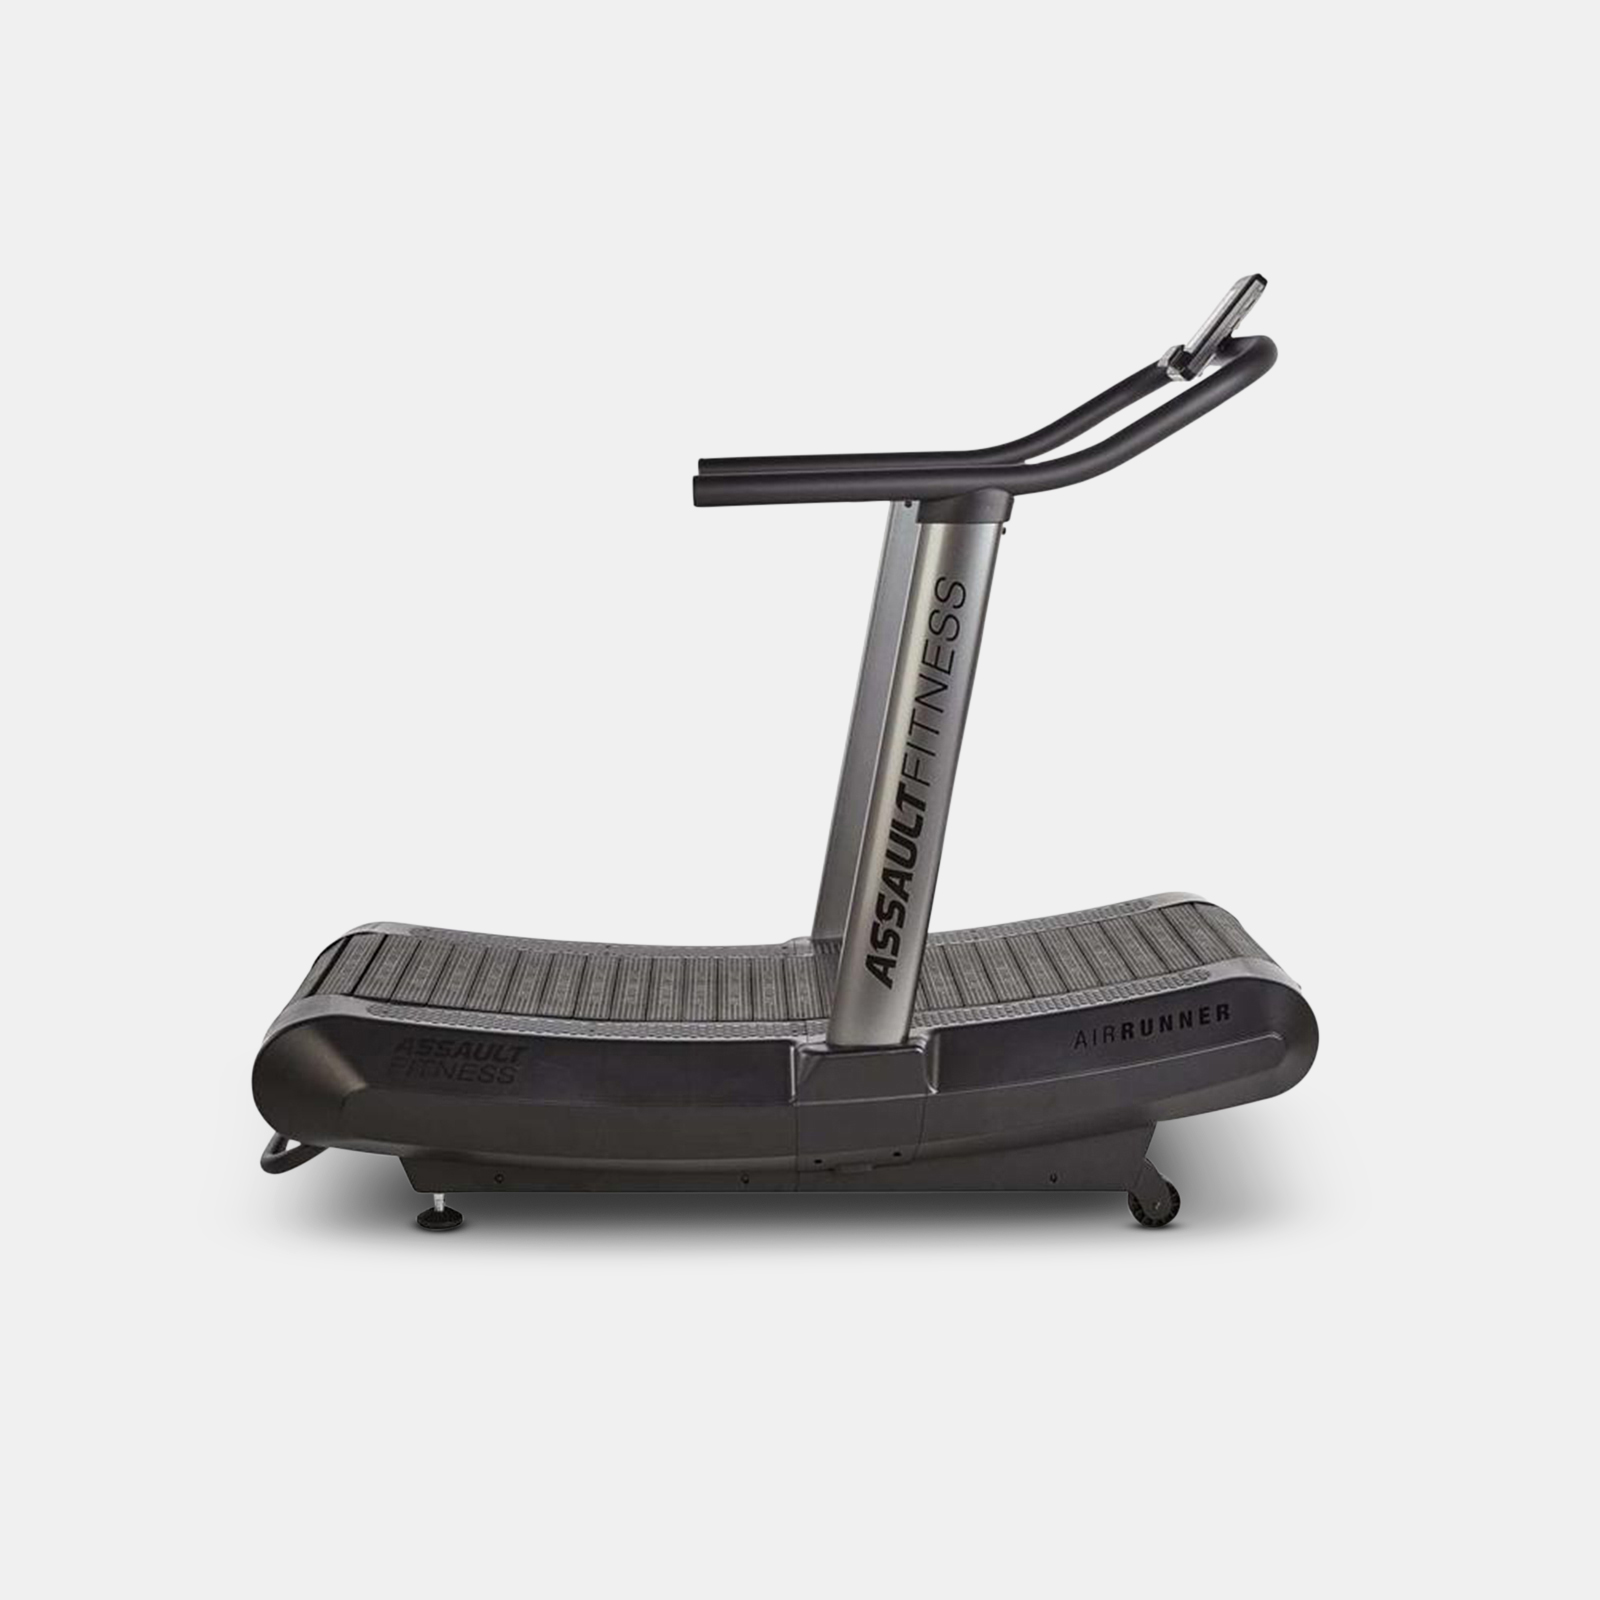 Assault Air Runner Pro Treadmill image